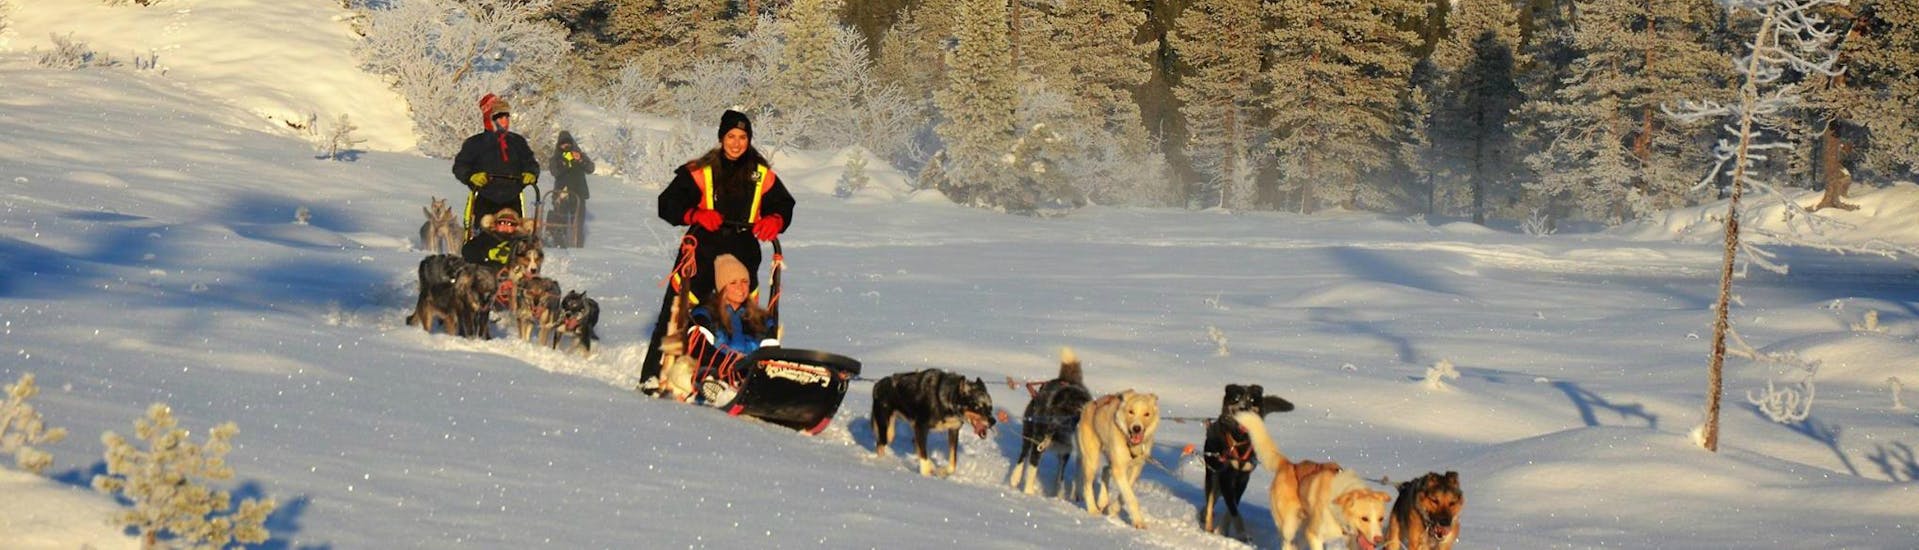 Die Teilnehmer der Hundeschlittentour bei Trondheim in Kopperå - 2-Tages-Tour mit Norway Husky Adventure haben Spaß, während sie ihr Schlittenhundegespann durch den glitzernden Schnee ziehen.